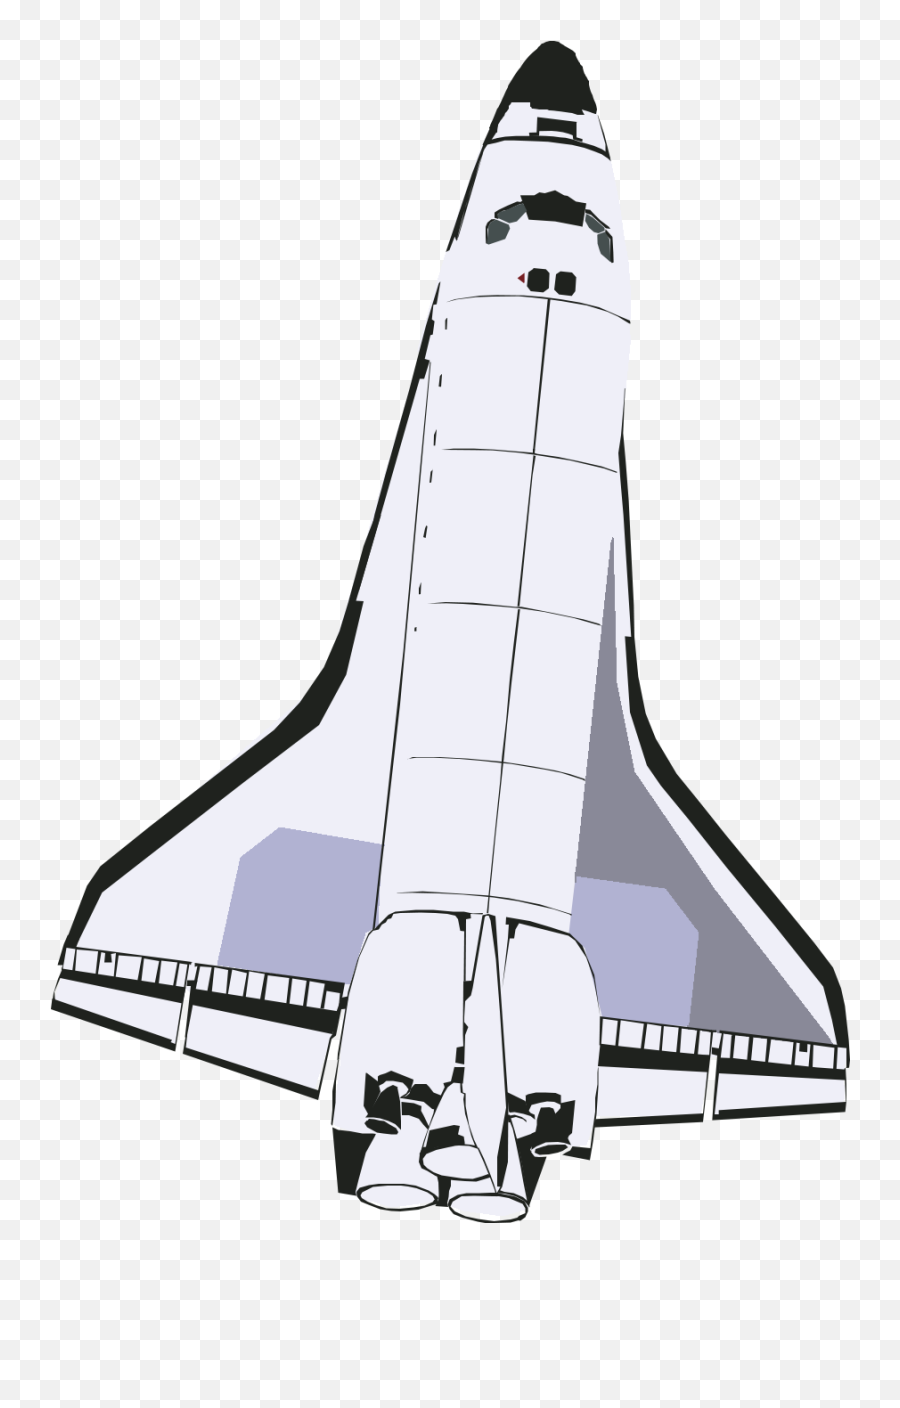 Rocketship - Rocketship Png,Rocket Ship Png